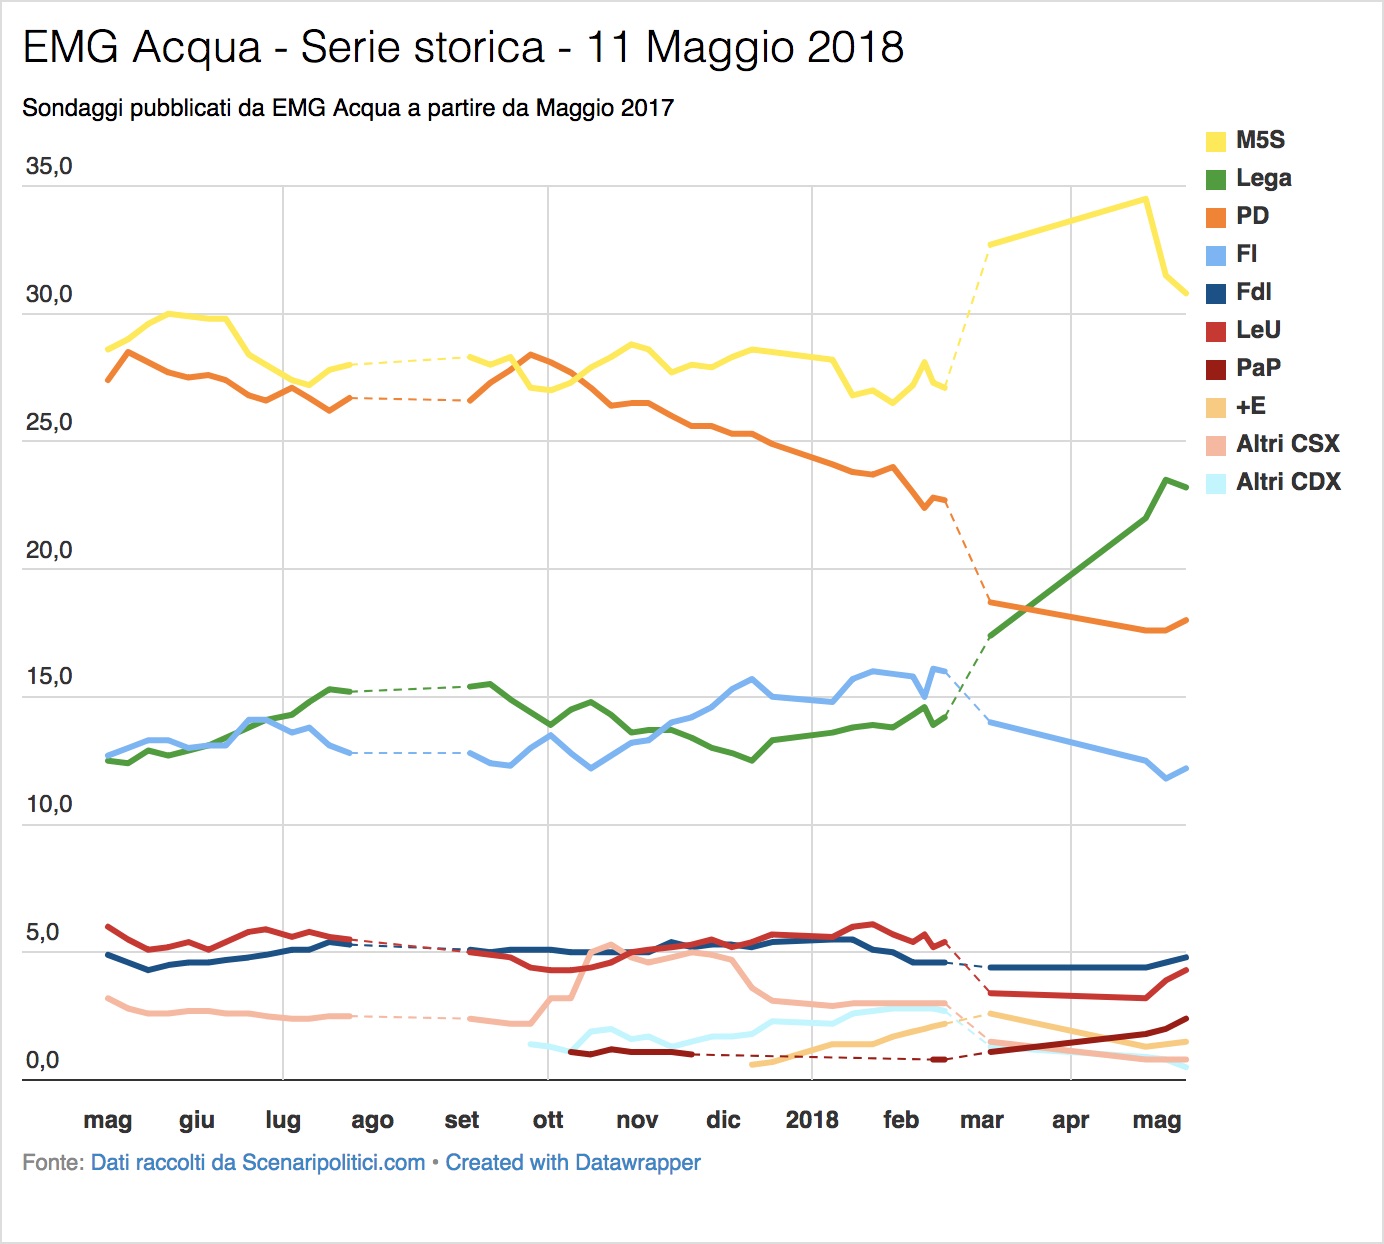 Sondaggio EMG Acqua (11 Maggio 2018)